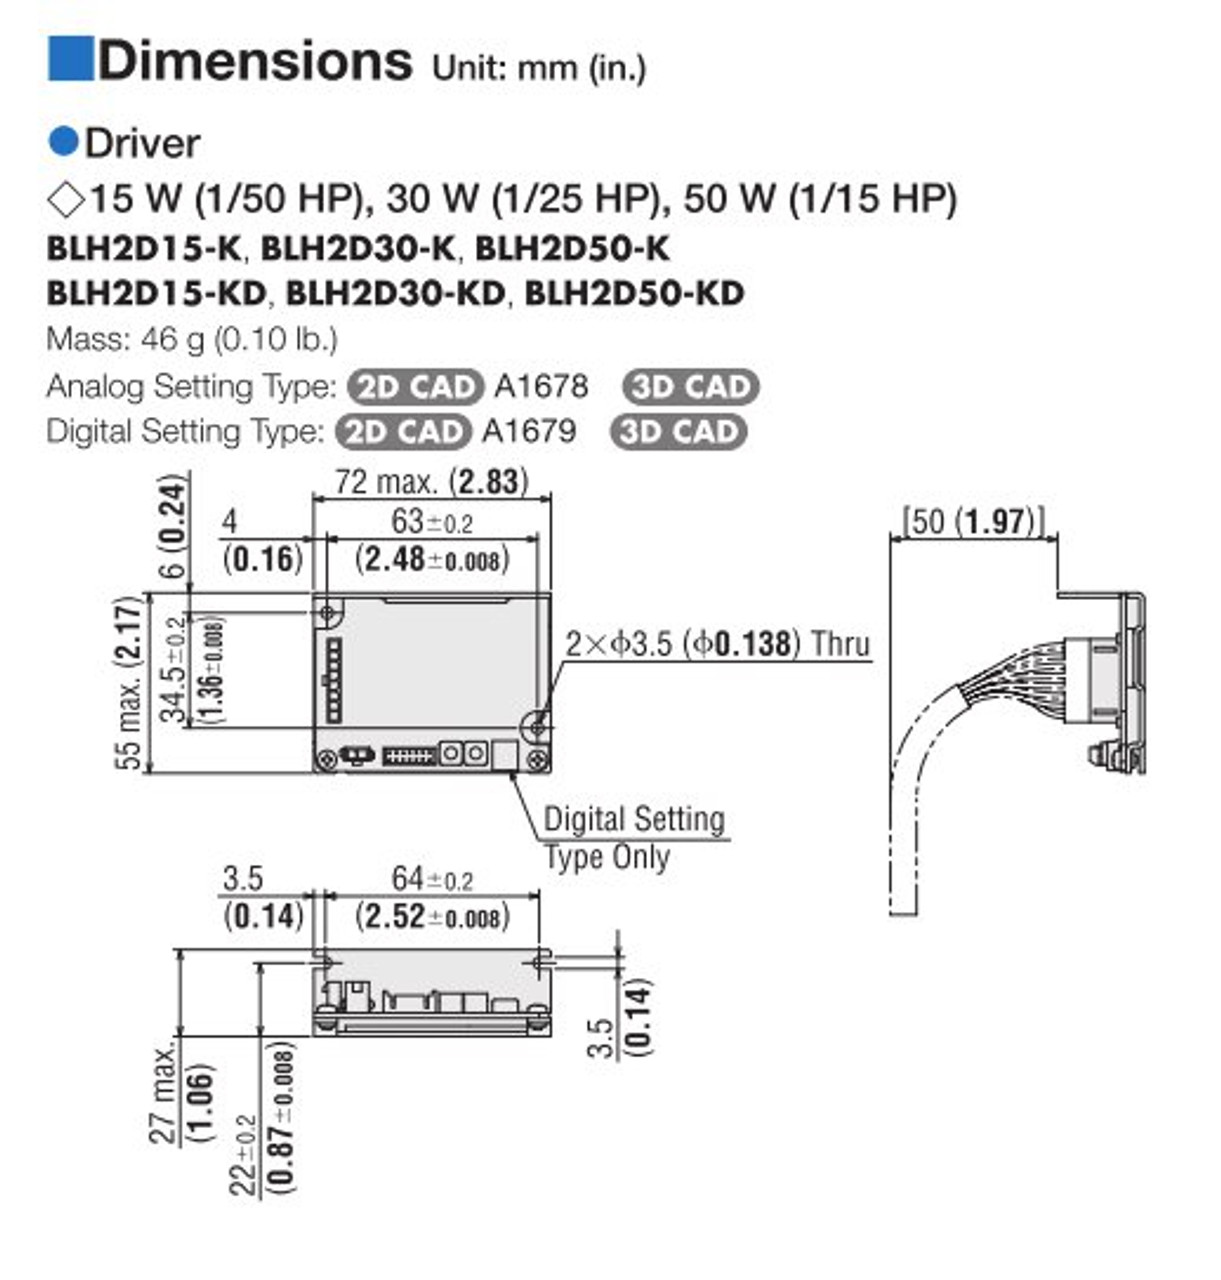 BLHM015K-50 / BLH2D15-K - Dimensions